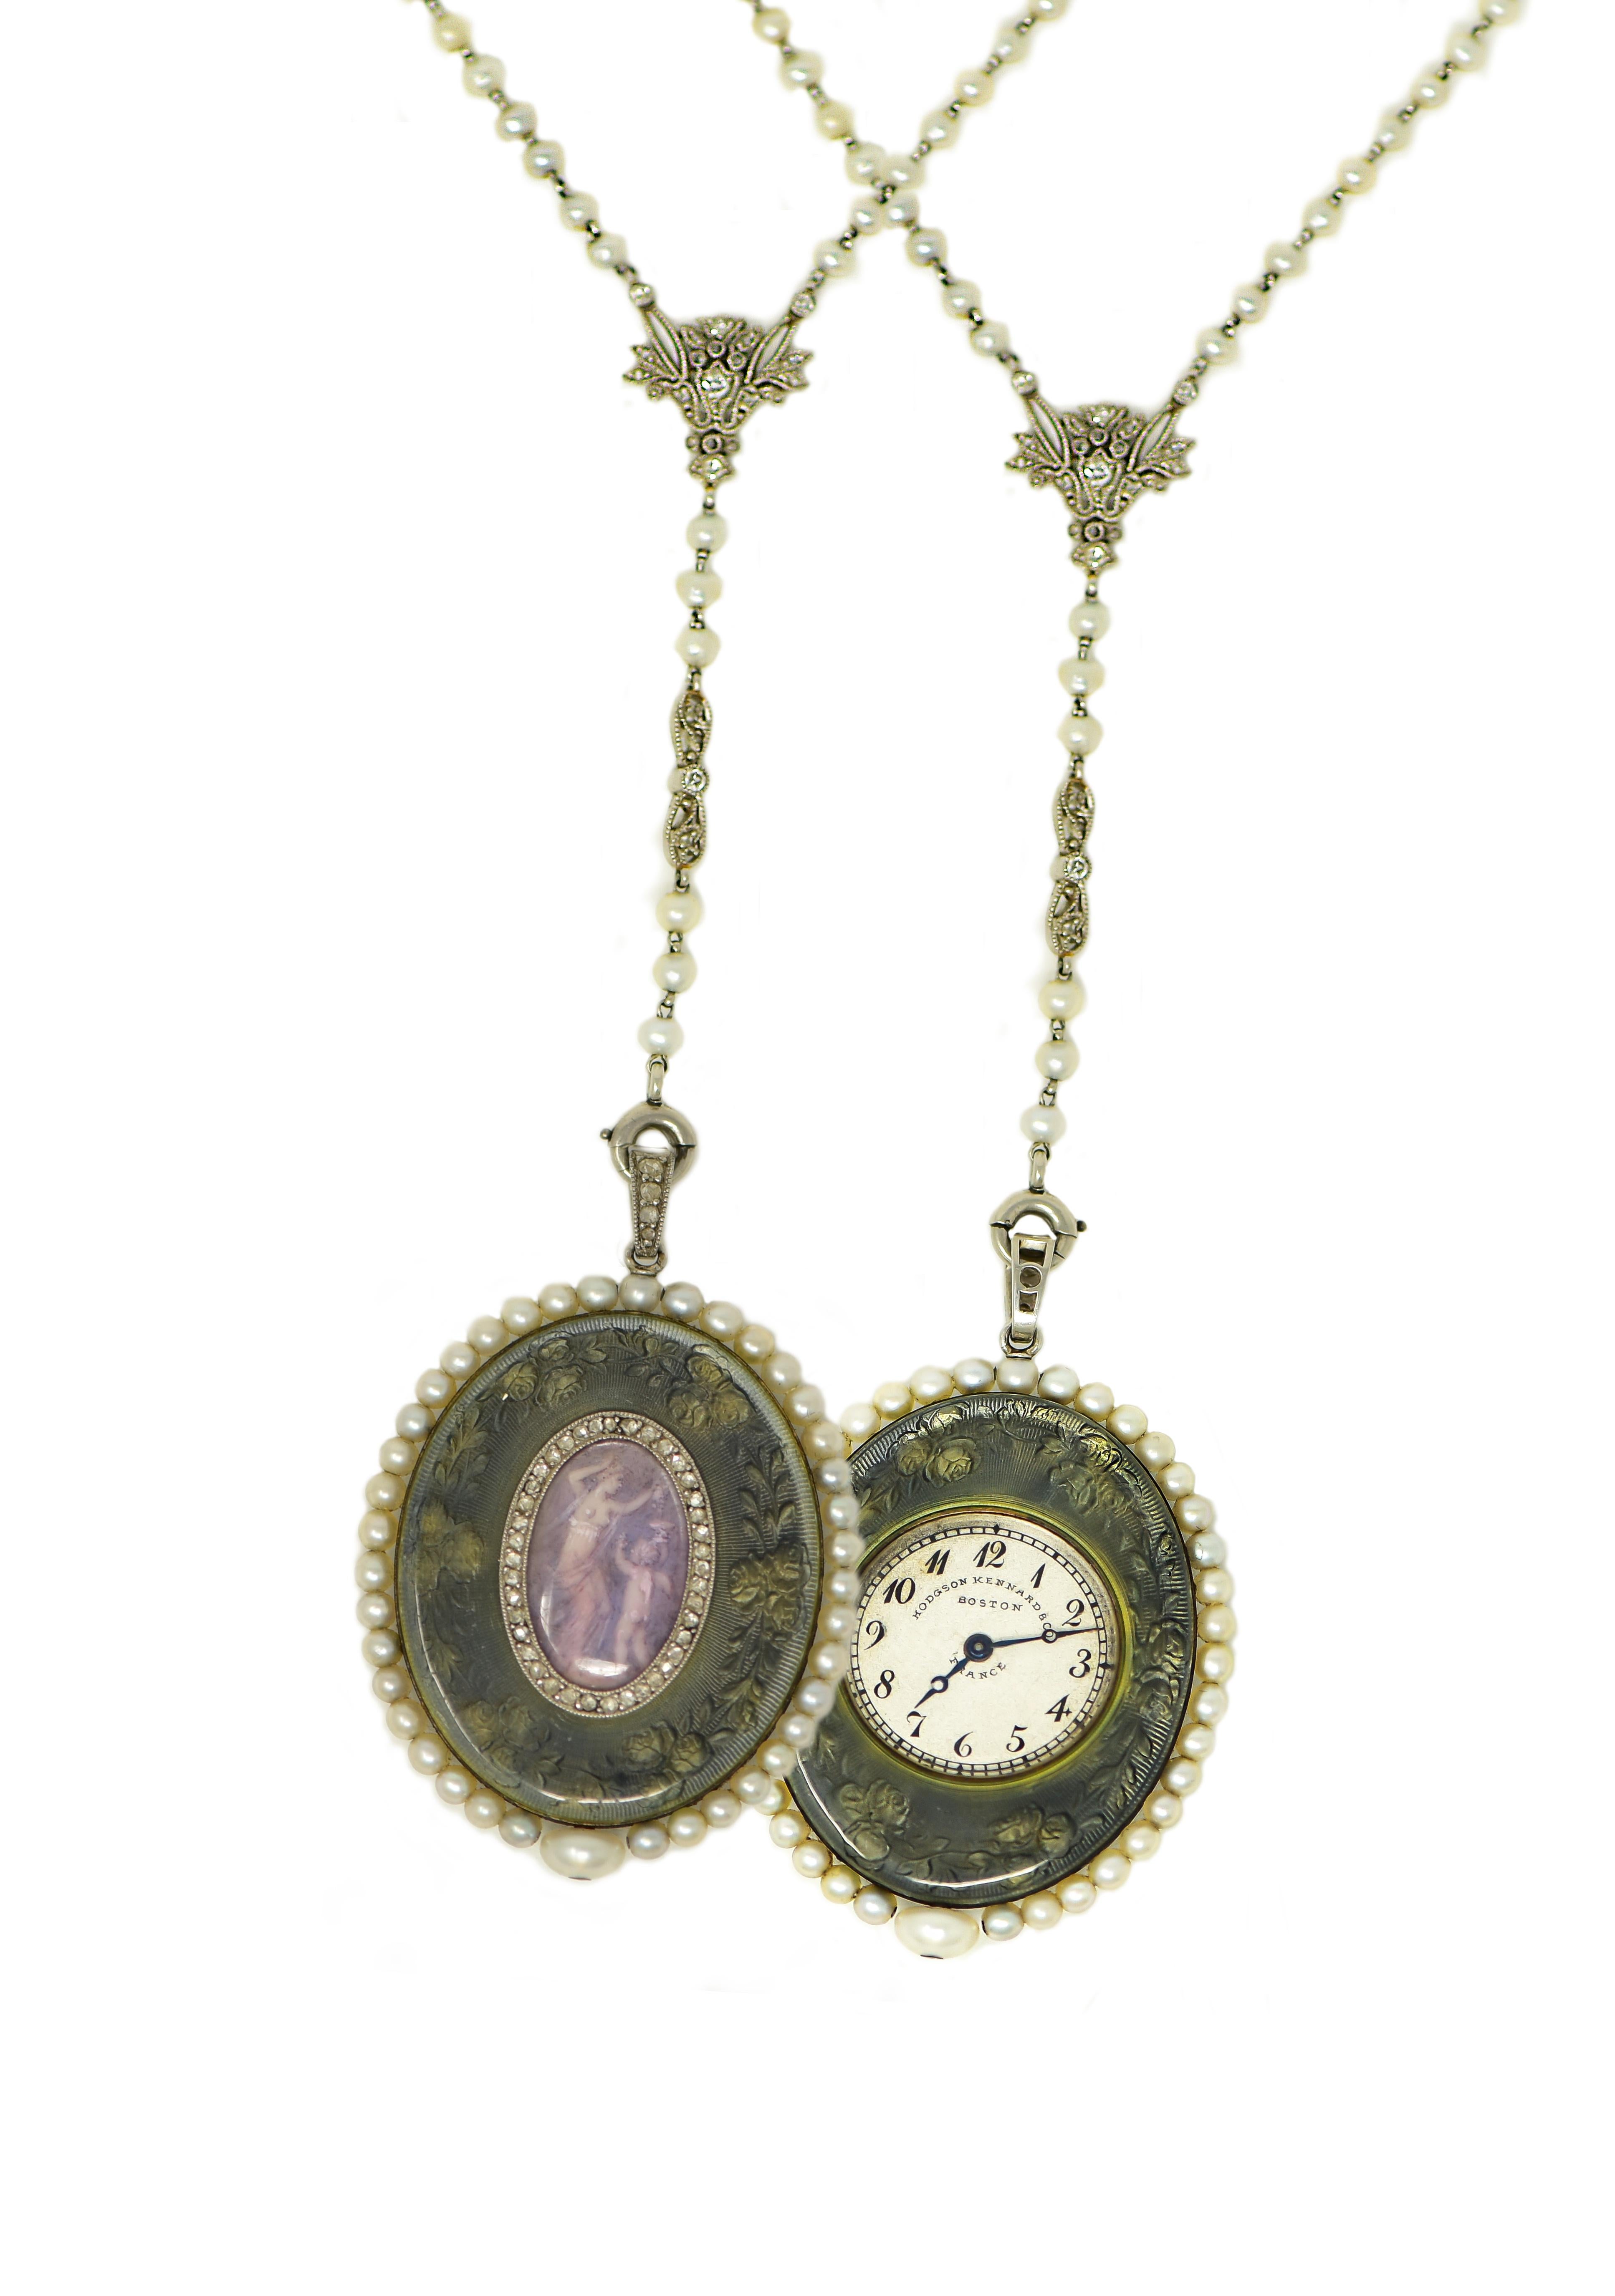 Verger Freres Paillet Platinum Diamond Enamel Pearl Necklace Pendant Watch, 1900 For Sale 11